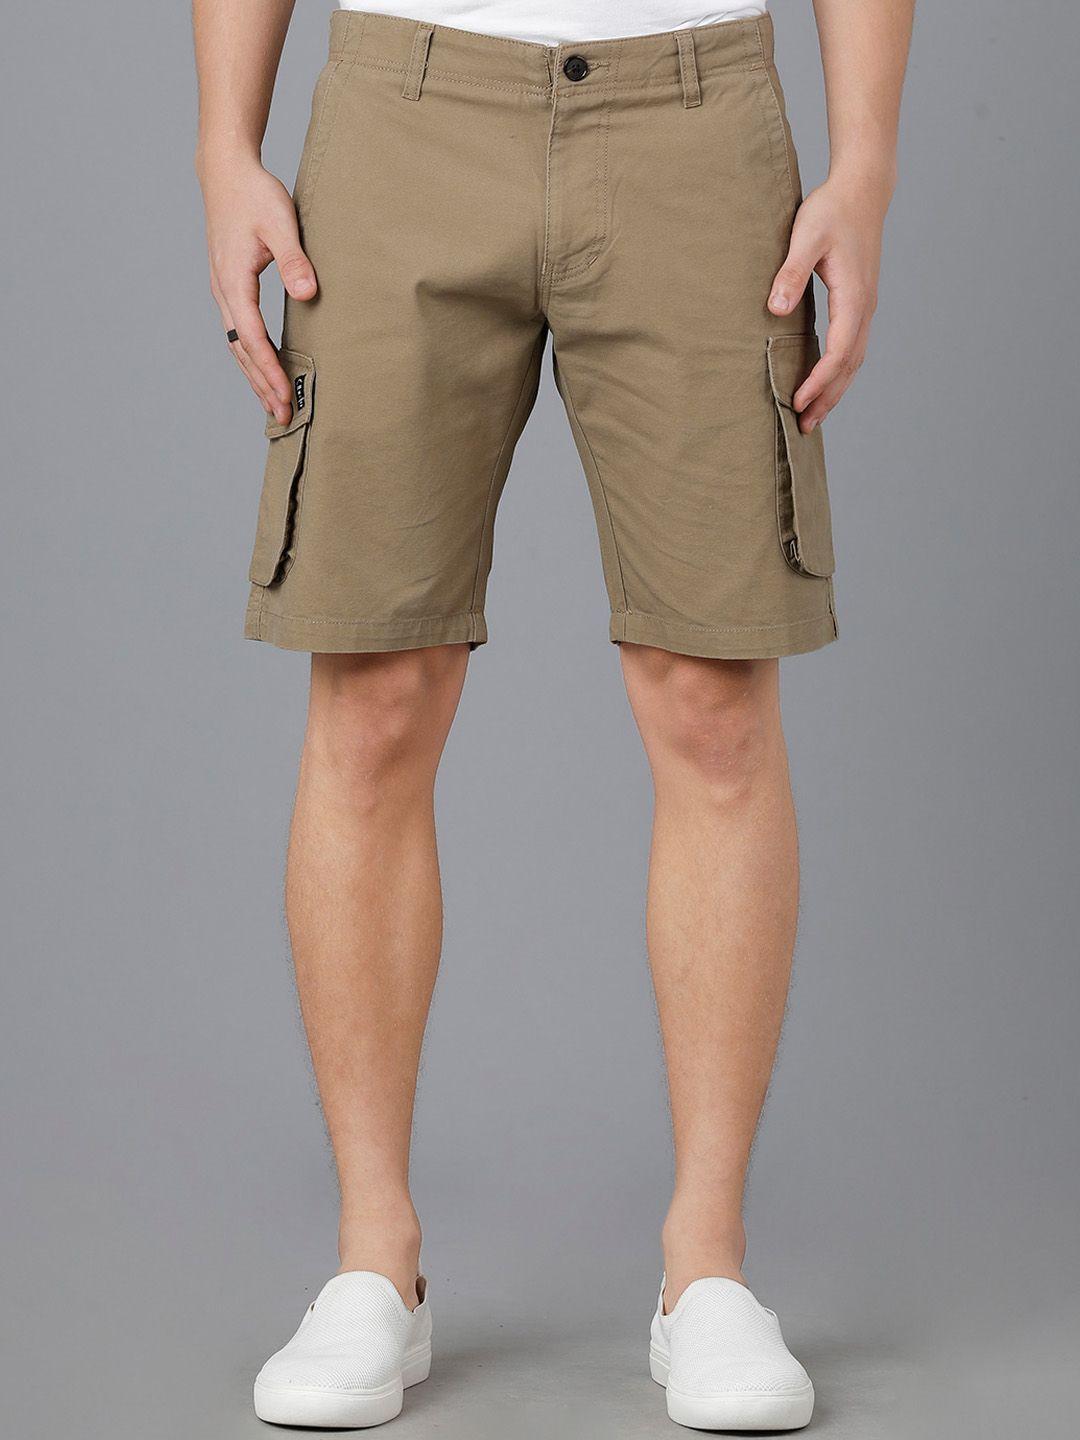 yovish men slim fit cargo shorts